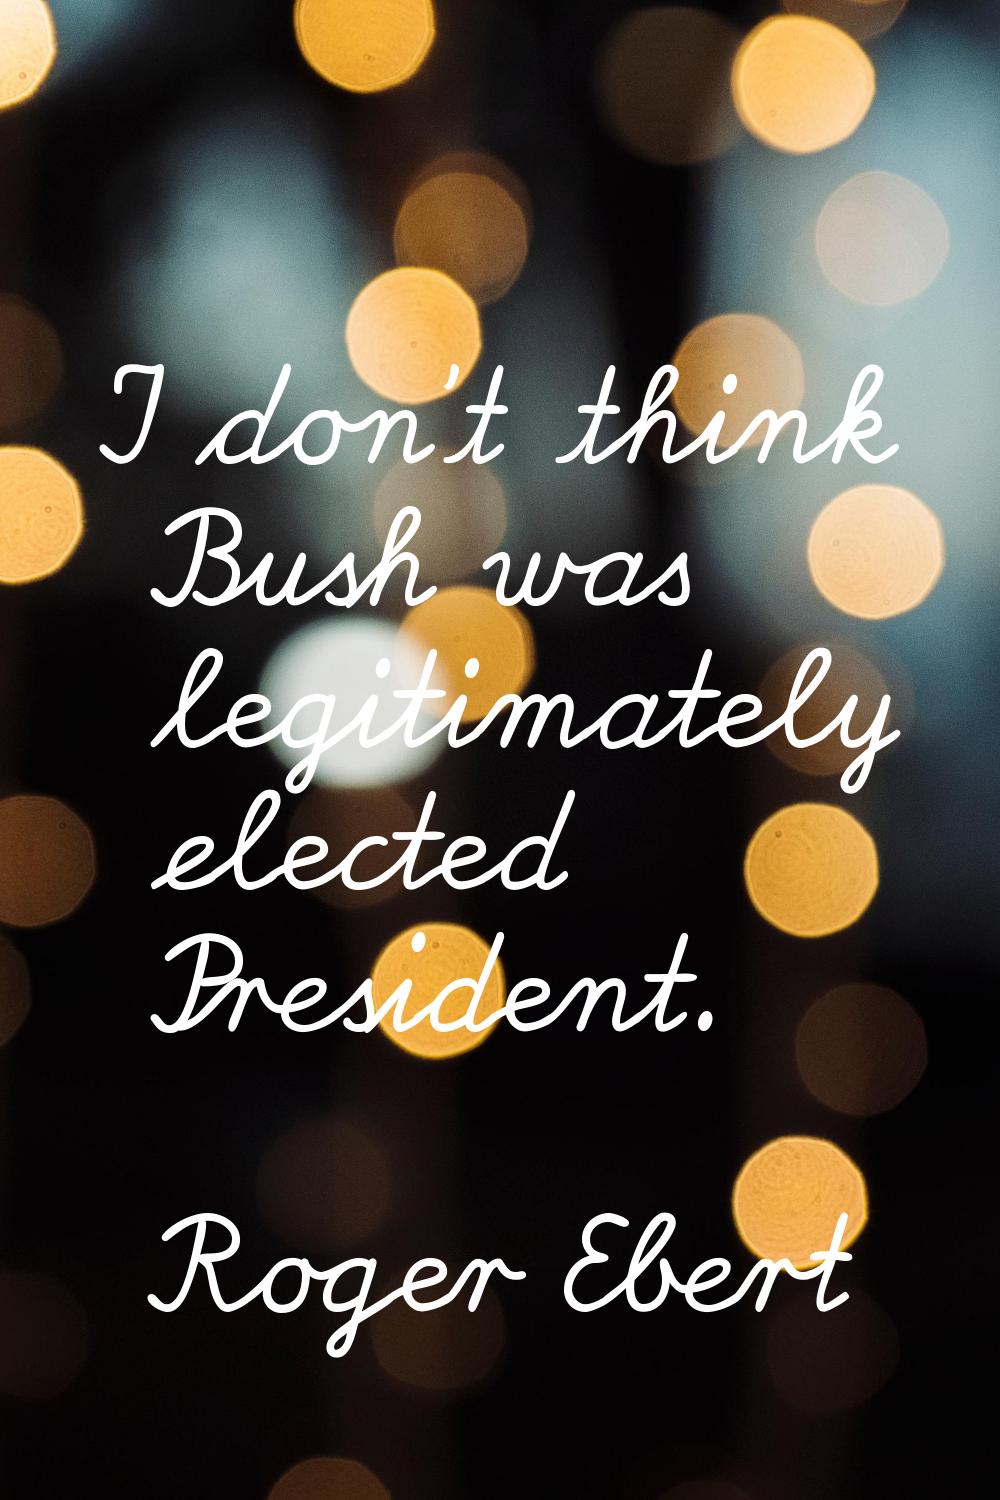 I don't think Bush was legitimately elected President.